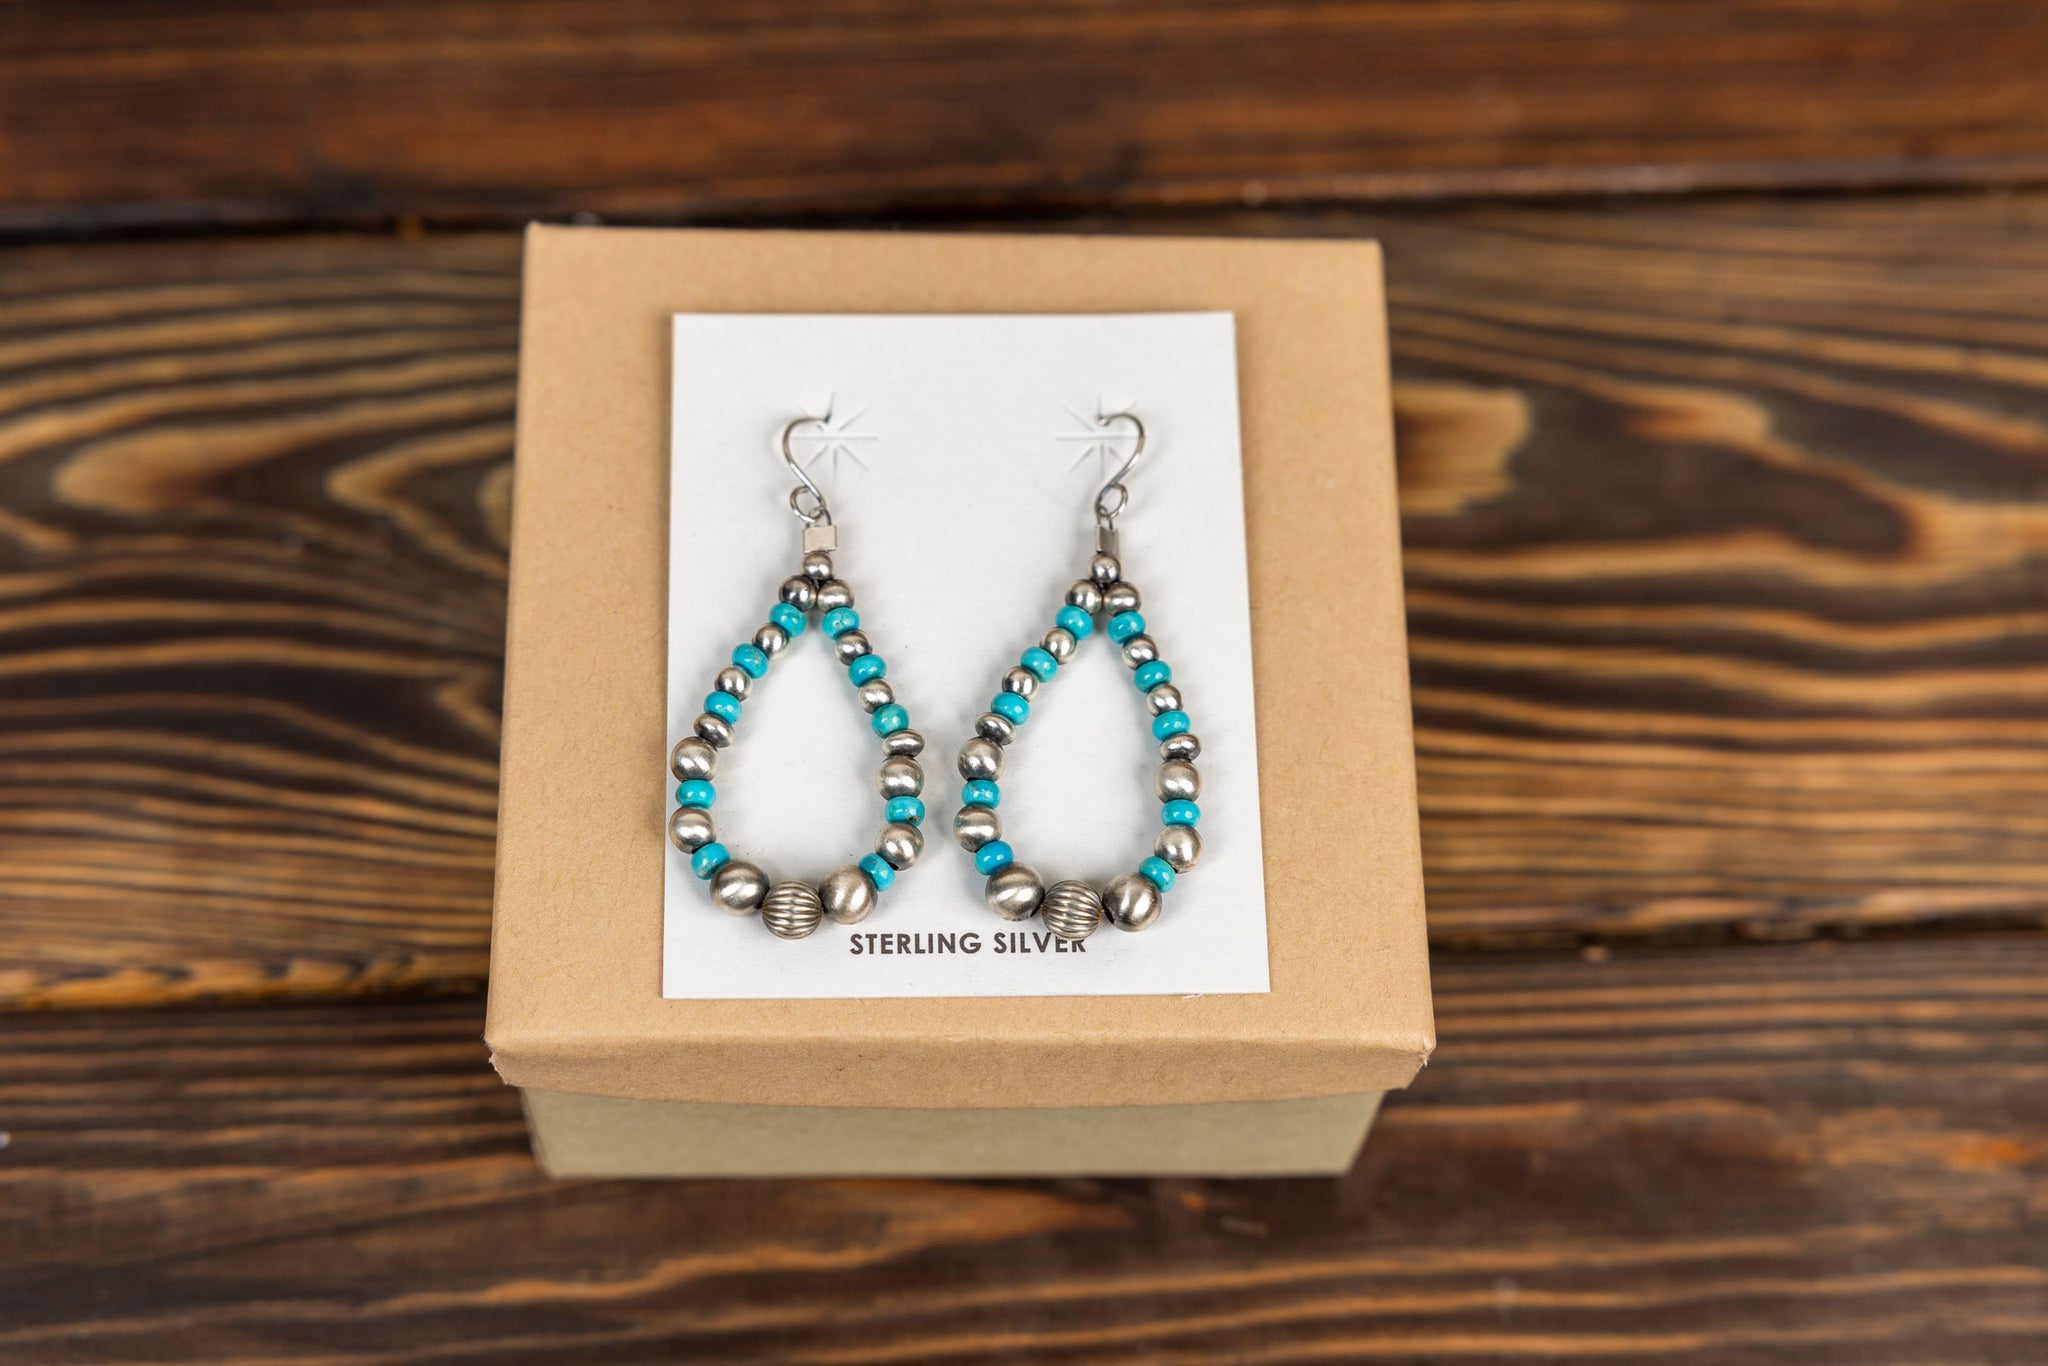 Navajo Pearl and Turquoise Hoop Earrings